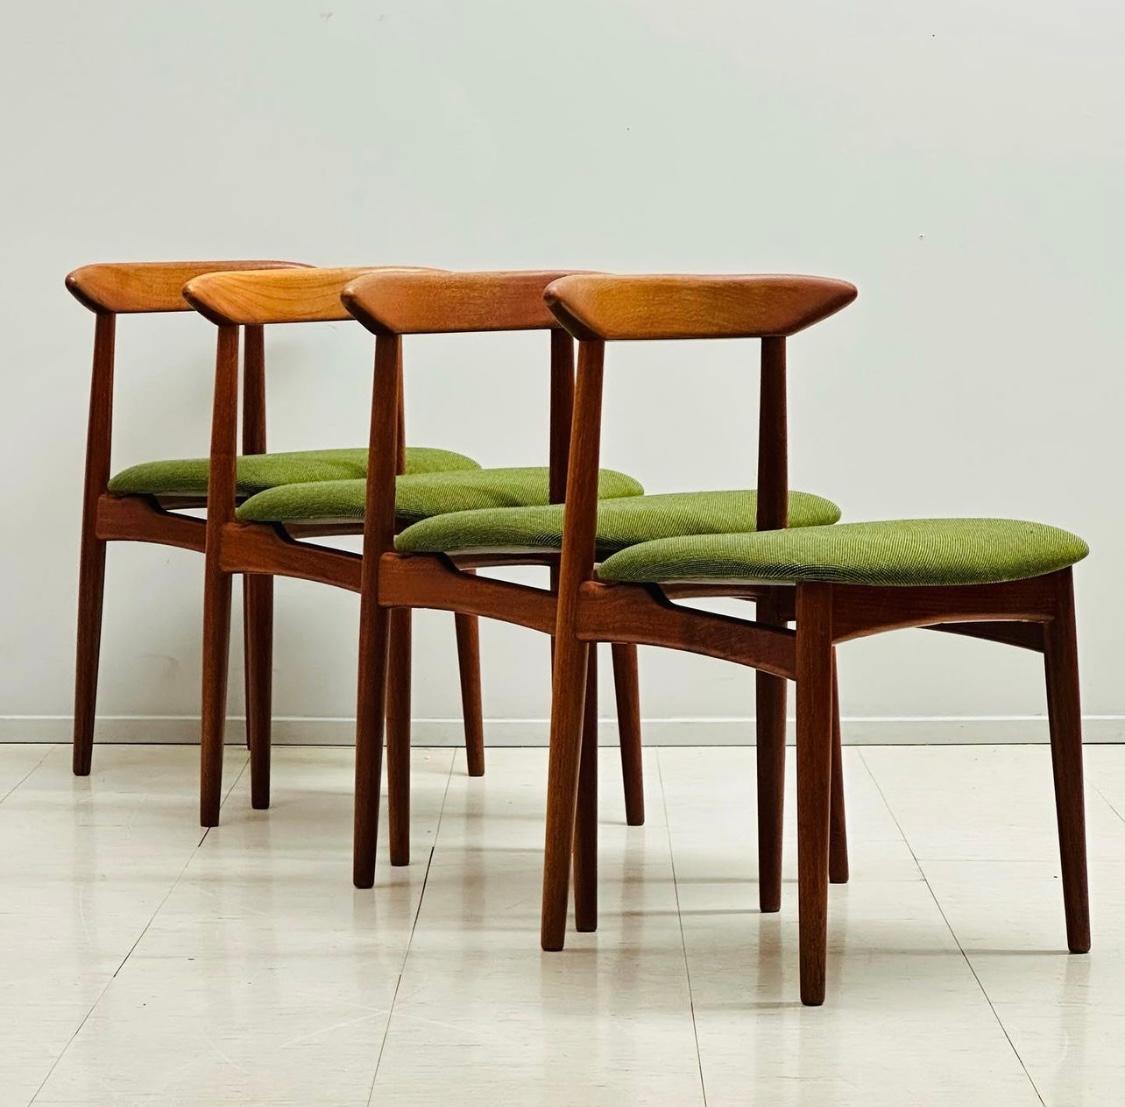 Ensemble de 4 chaises danoises vintage en teck par Arne Hovmand-Olsen pour Mogens Kold, années 1950.
Chaise élégante et sculpturale en teck massif avec tissu en laine magnifiquement restauré... Conçu en 1951 comme modèle MK310 par le célèbre